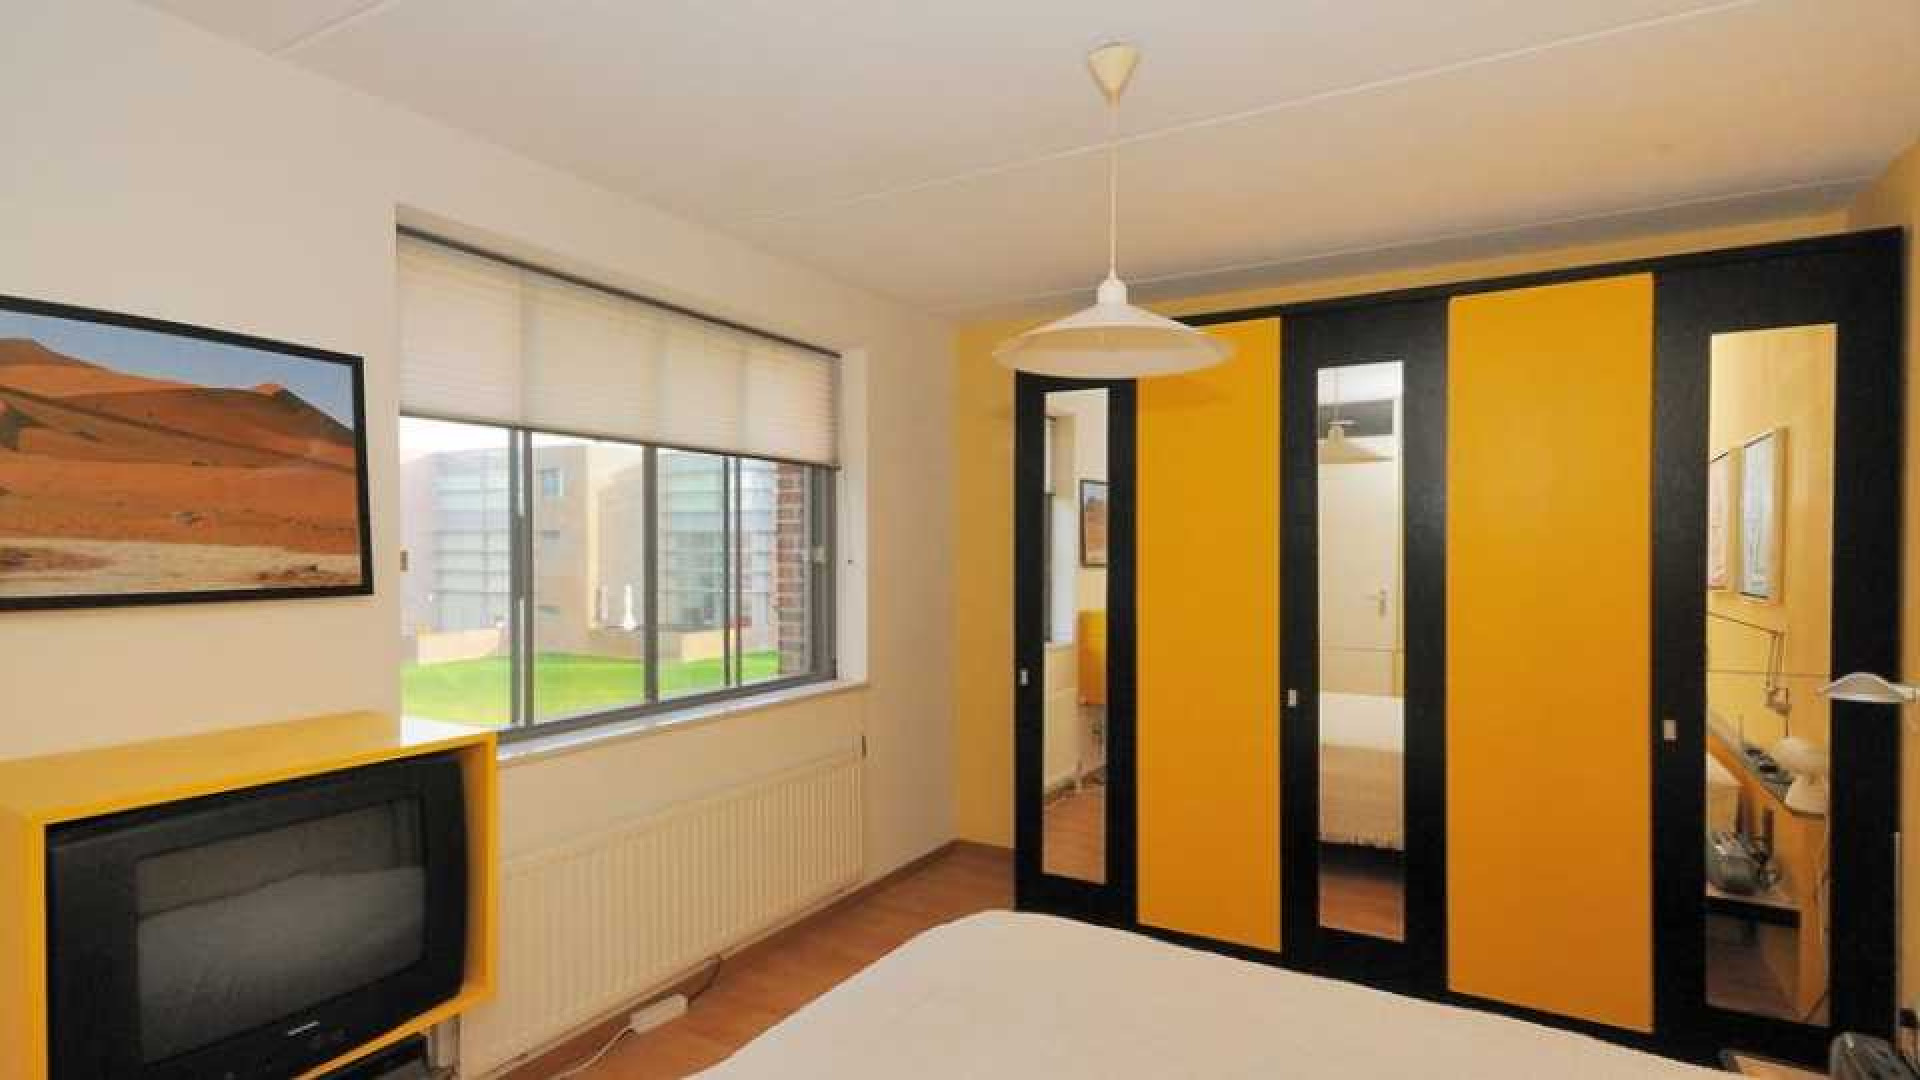 Zimra Geurts koopt luxe eengezinswoning in Utrecht. Zie foto's 4